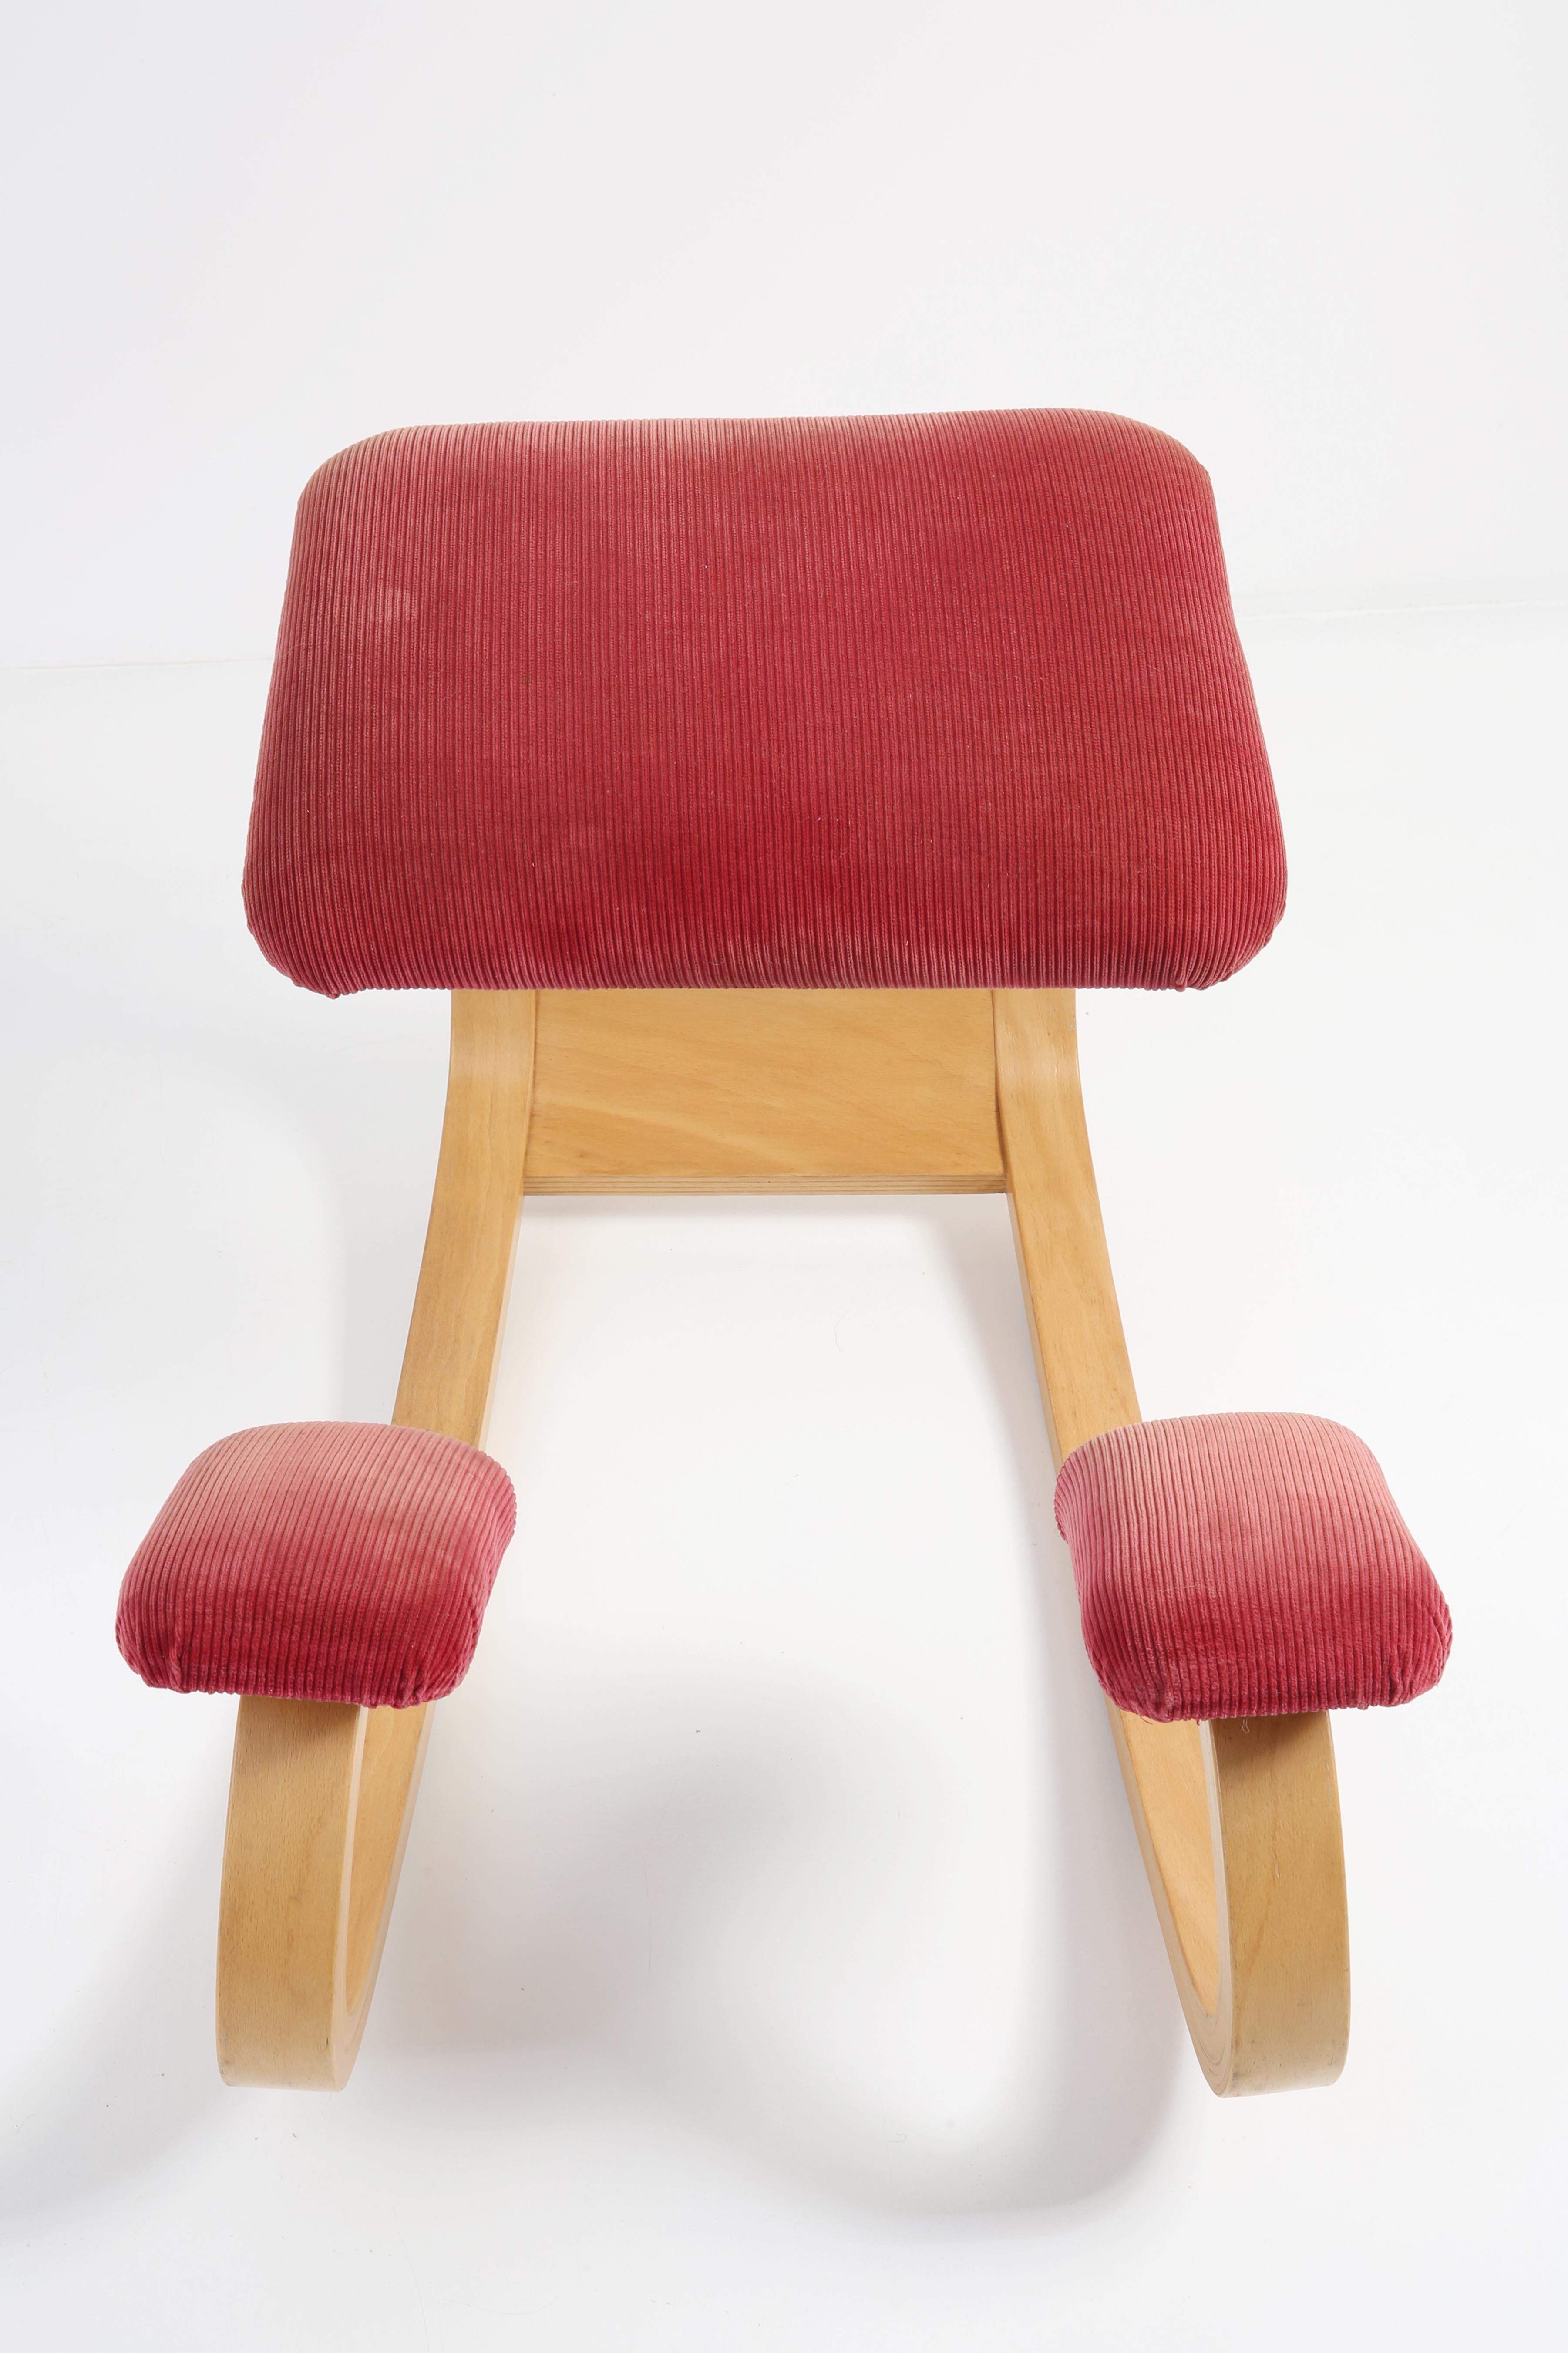 Fabric Variable Balans Peter Opsvik Kneeling Ergonomic Chair, Varier, 1970s, Norway